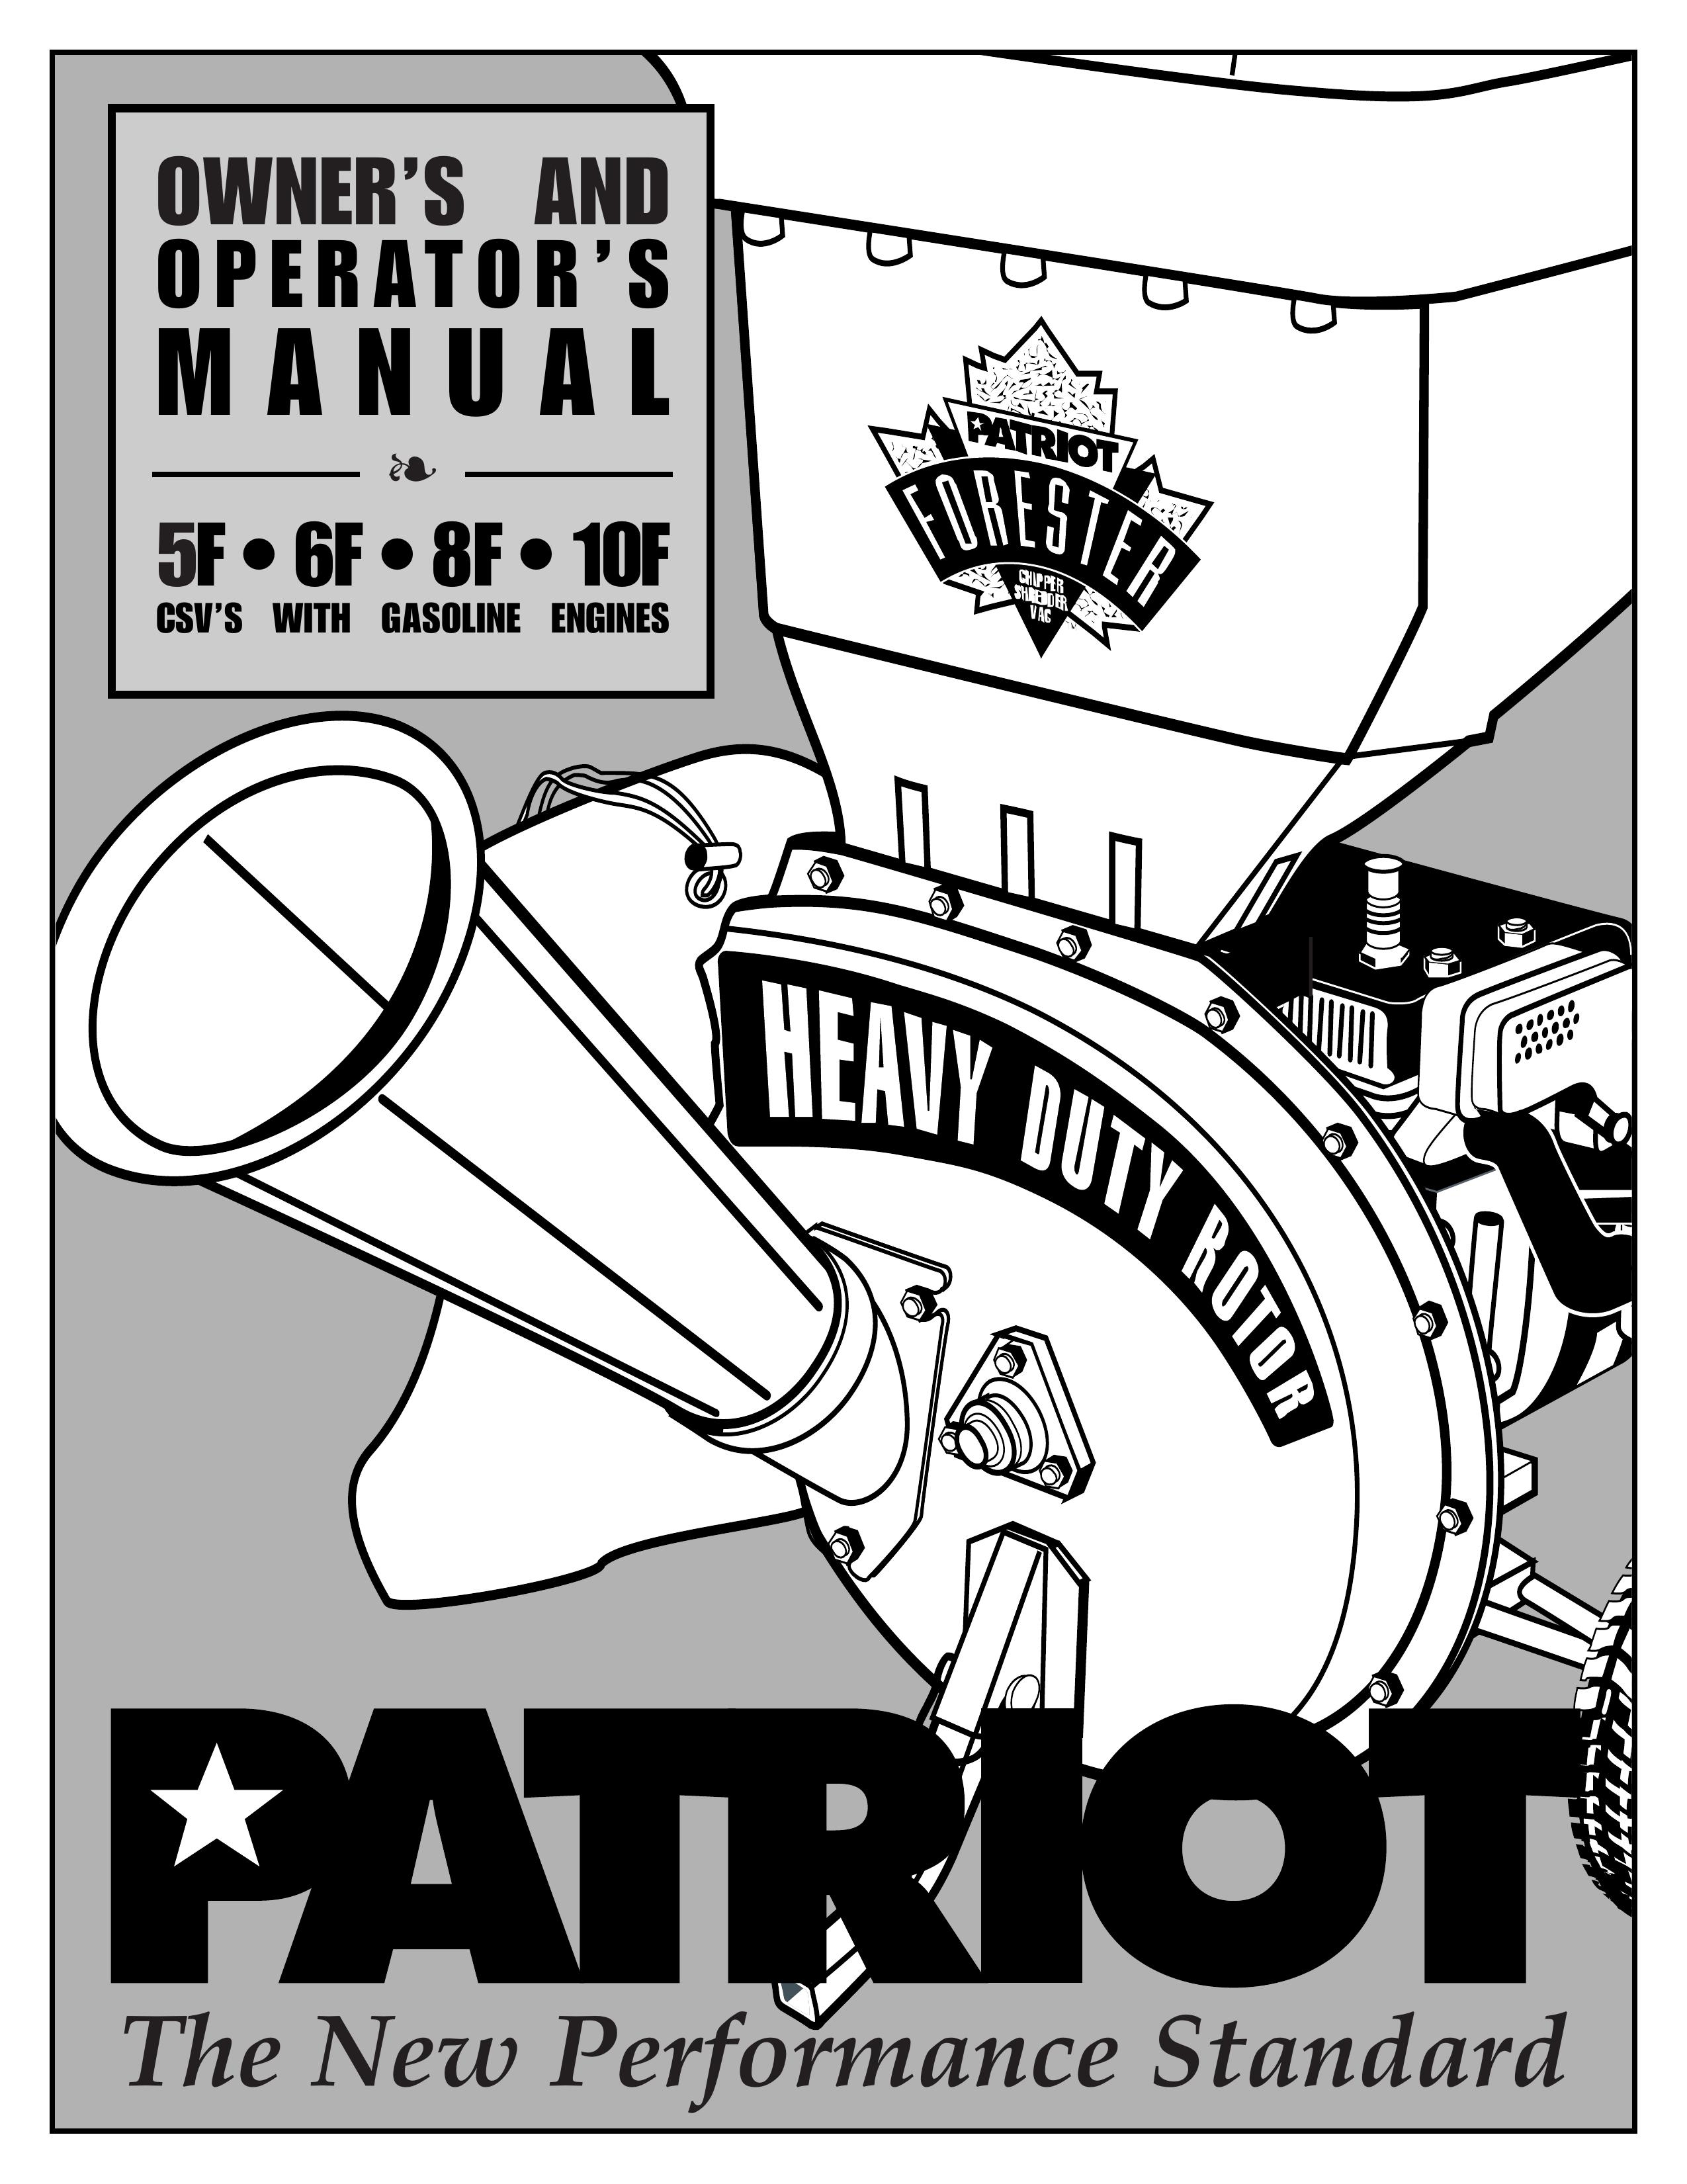 Patriot Products 5F, 6F, 8F, 10F Chipper User Manual